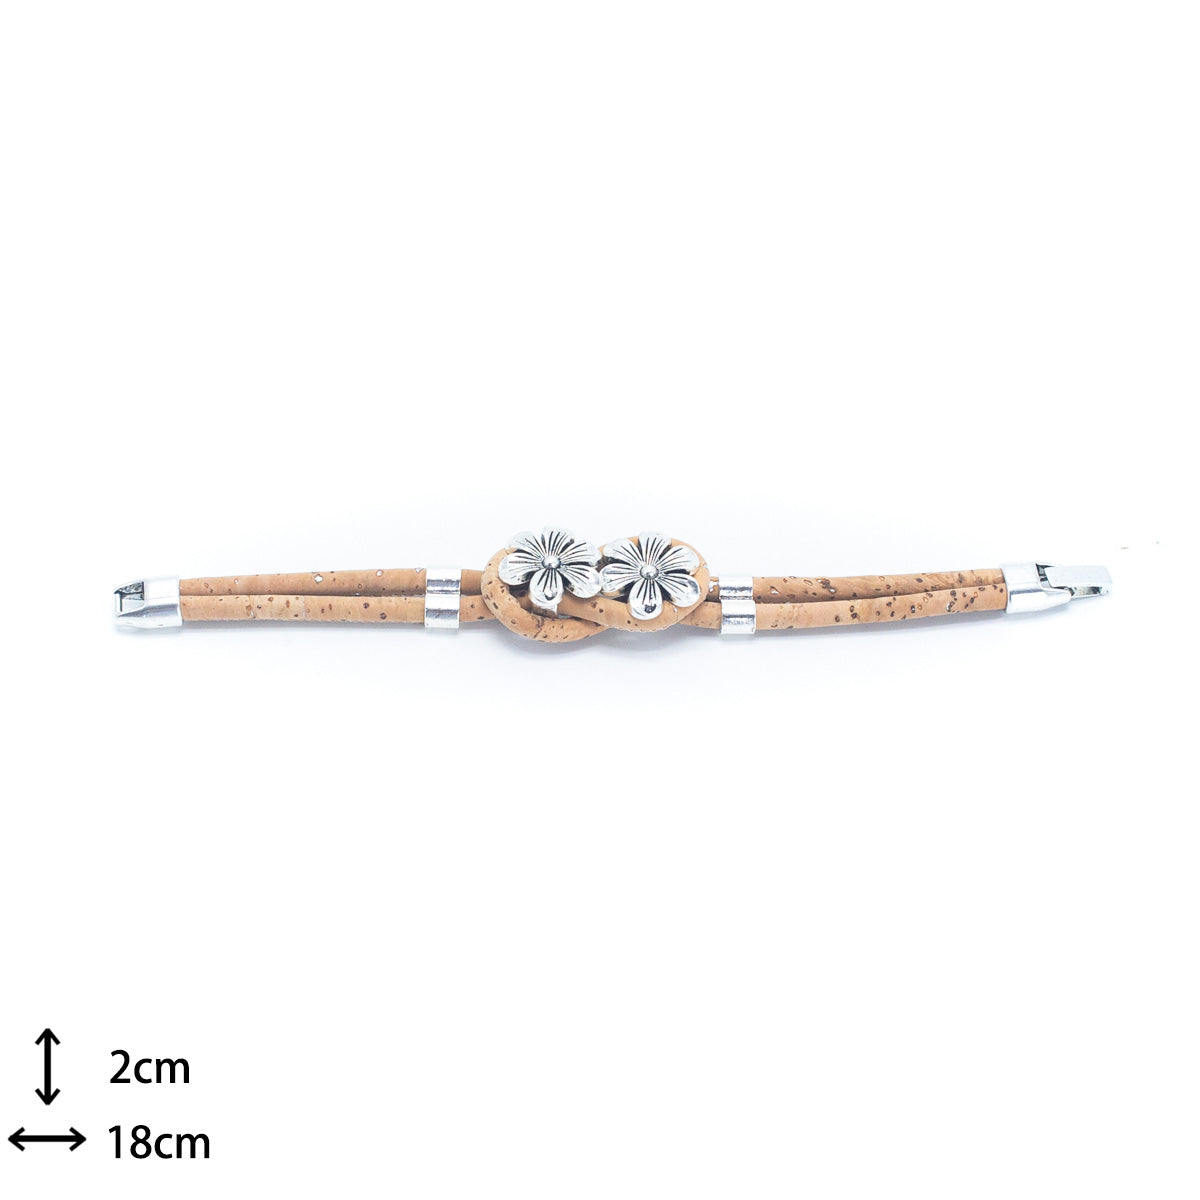 Handmade Natural Cork w/ Flower Accessories Beads Bracelet BR-226-MIX-5